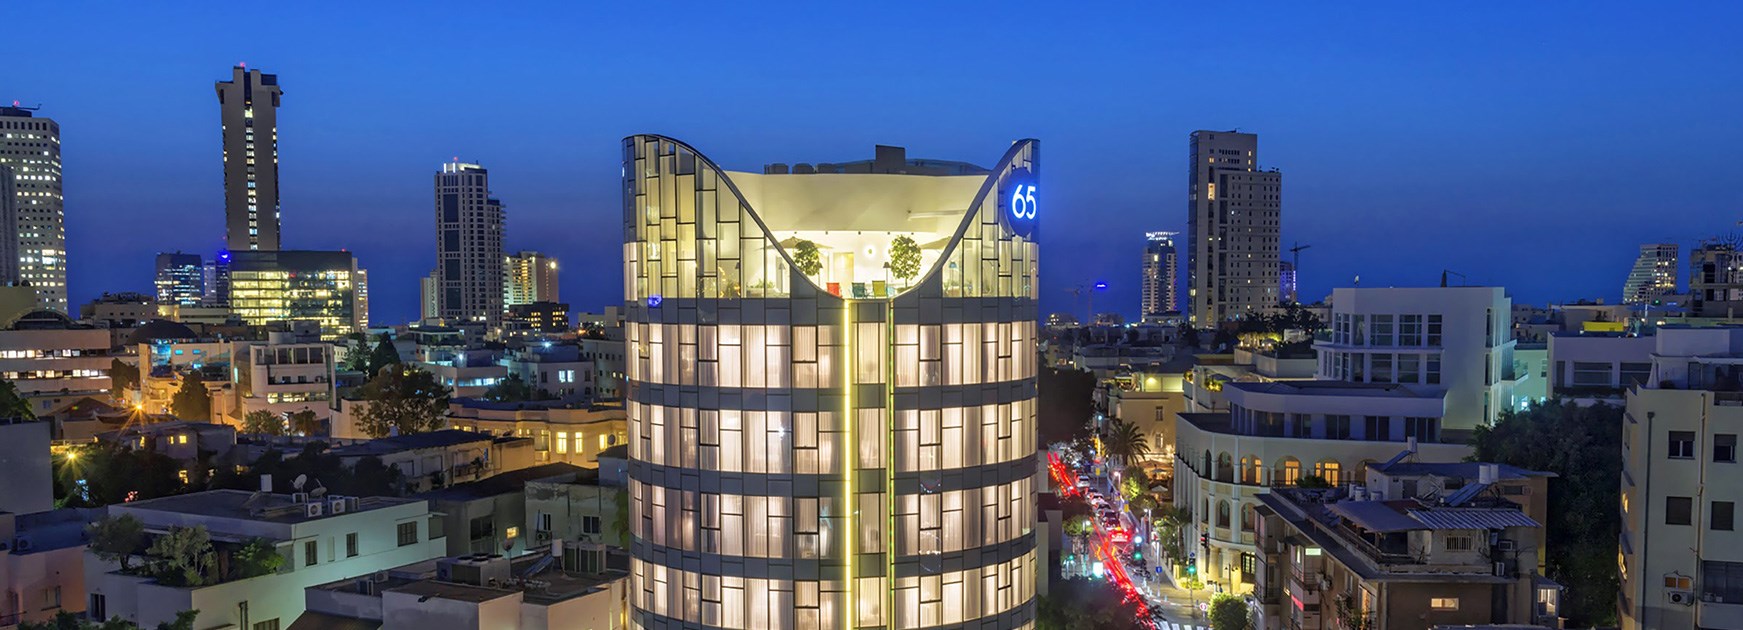 מבט רחפן על מלון 65 בתל אביב מבחוץ